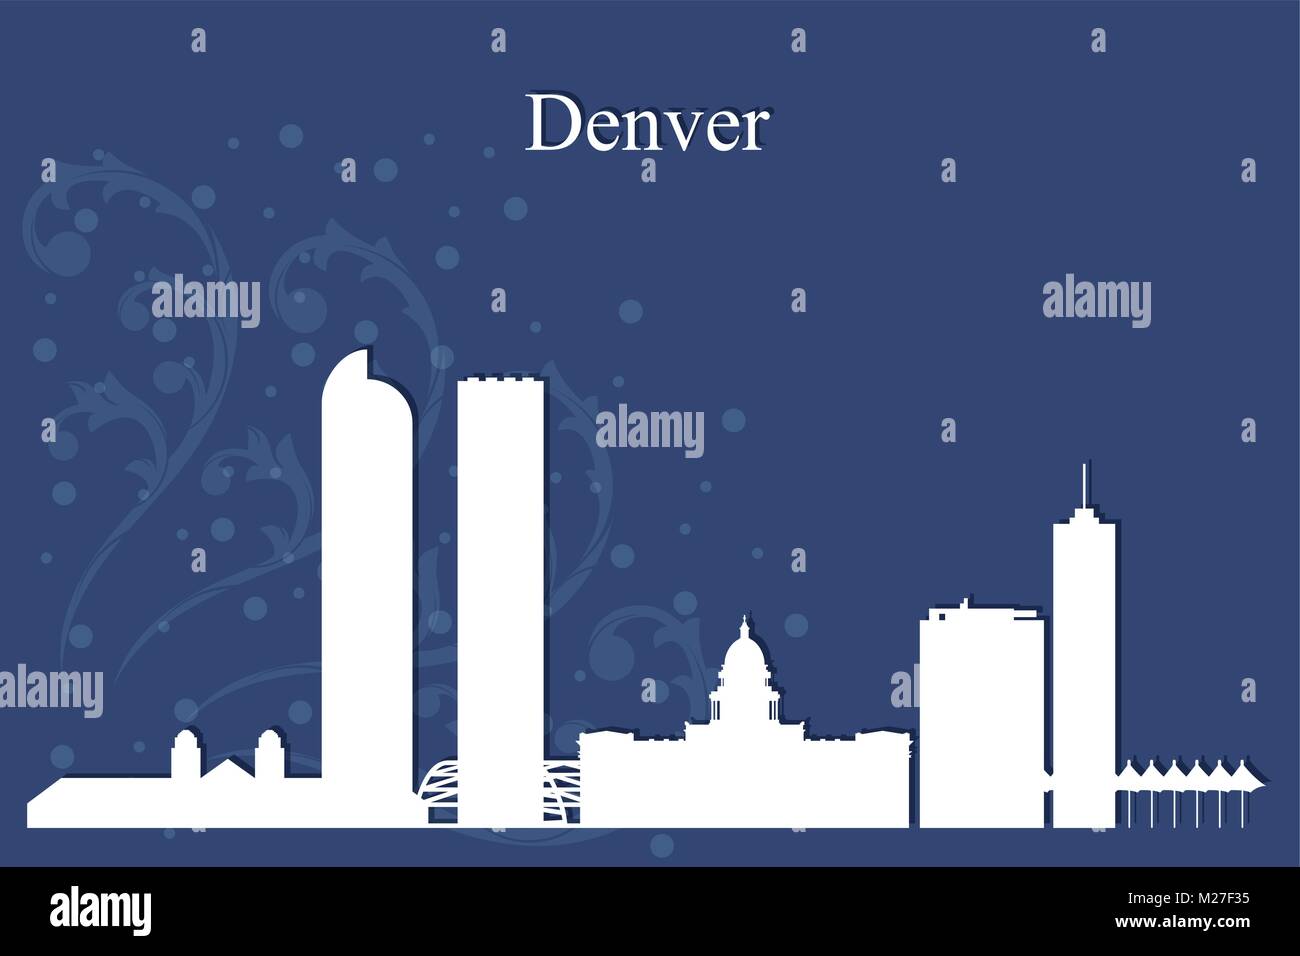 Denver Stadt Skyline Silhouette auf blauem Hintergrund, Vektor-illustration Stock Vektor